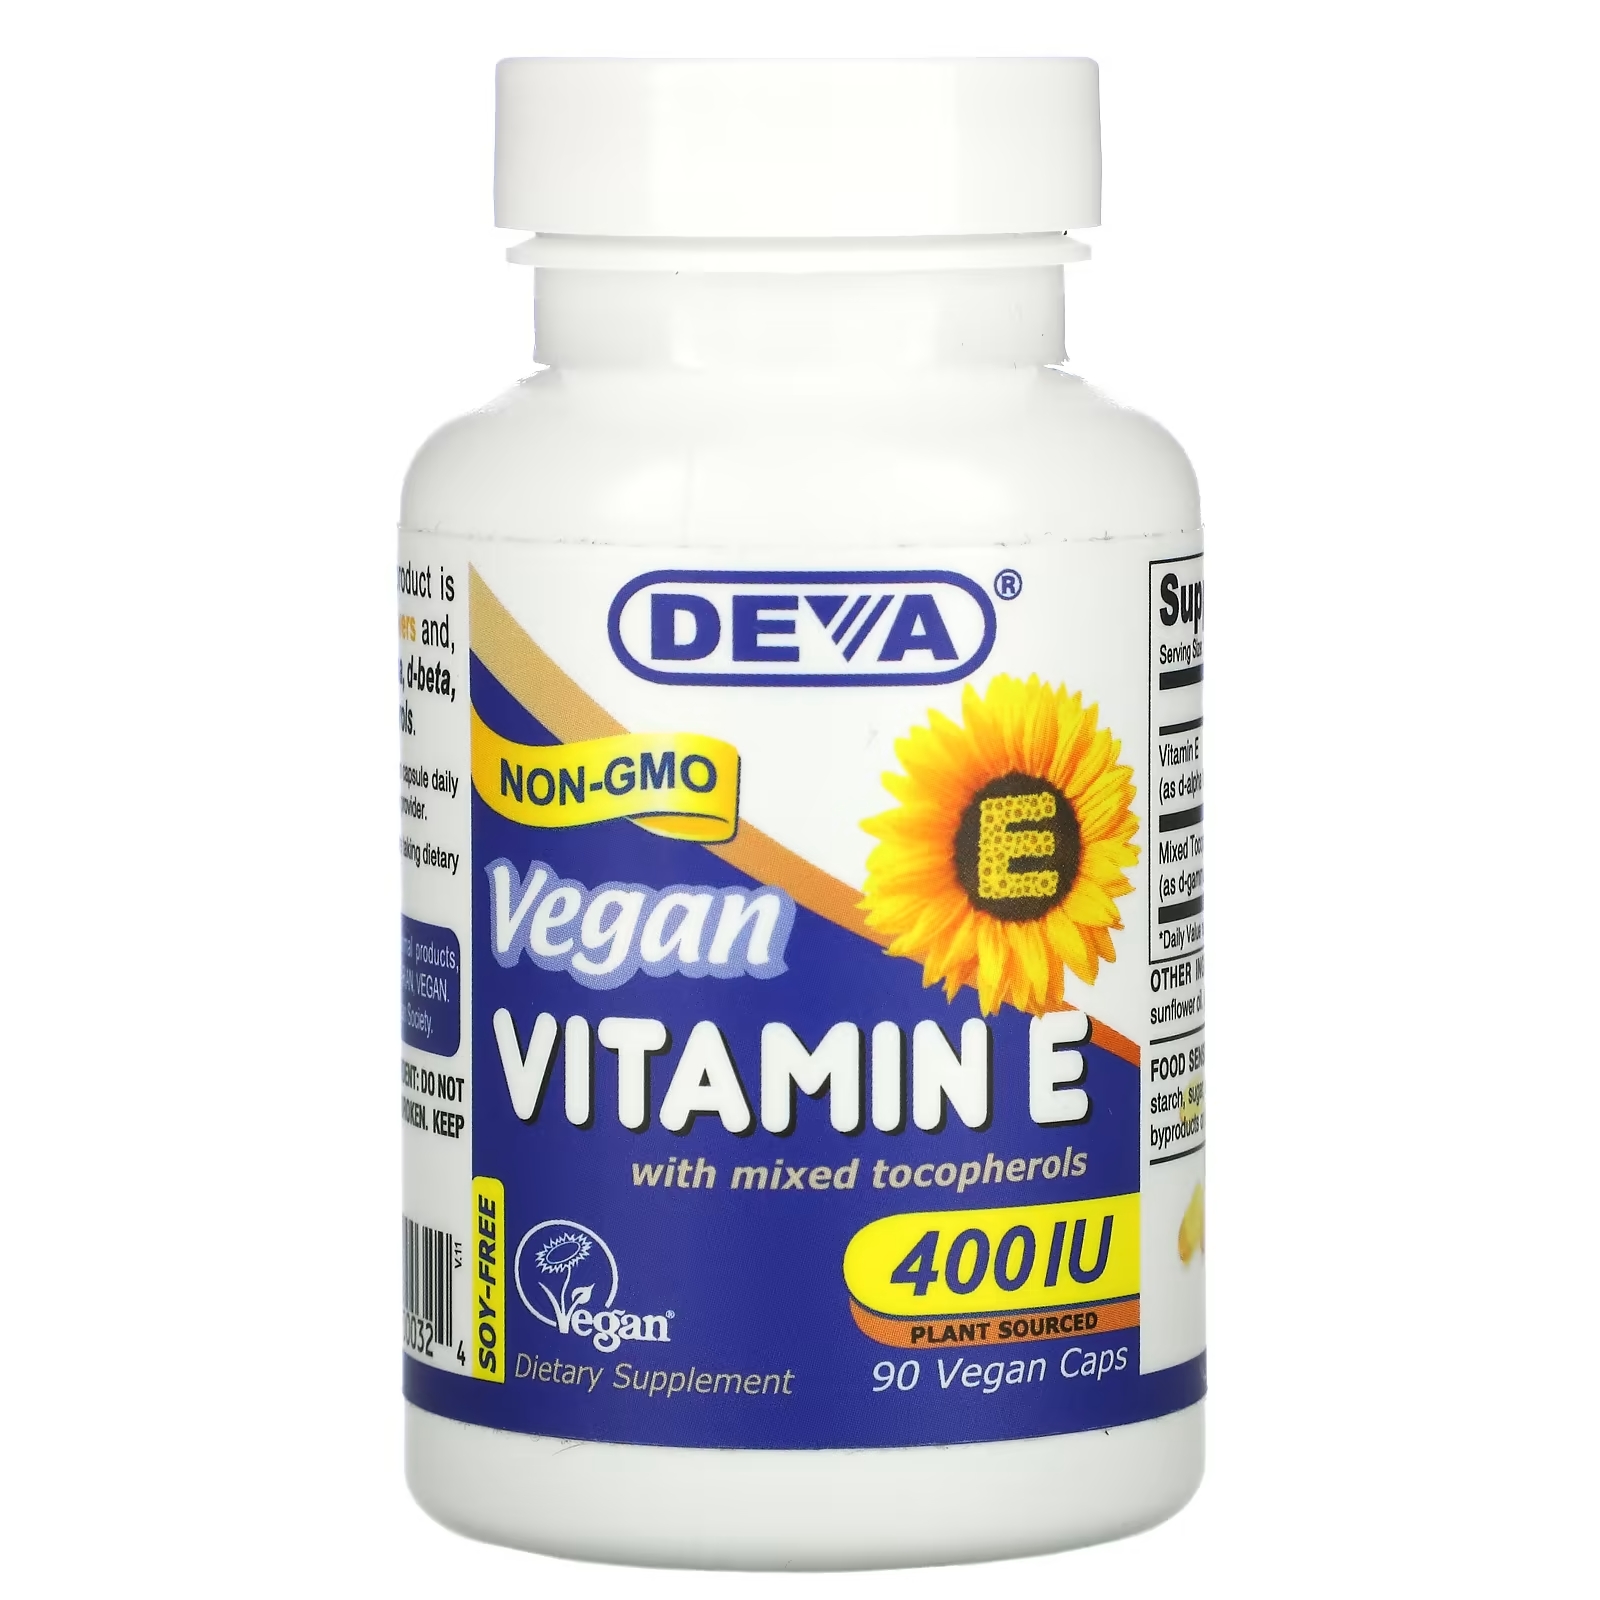 Deva Веганский витамин E со смешанными токоферолами без сои 400 МЕ, 90 веганских капсул